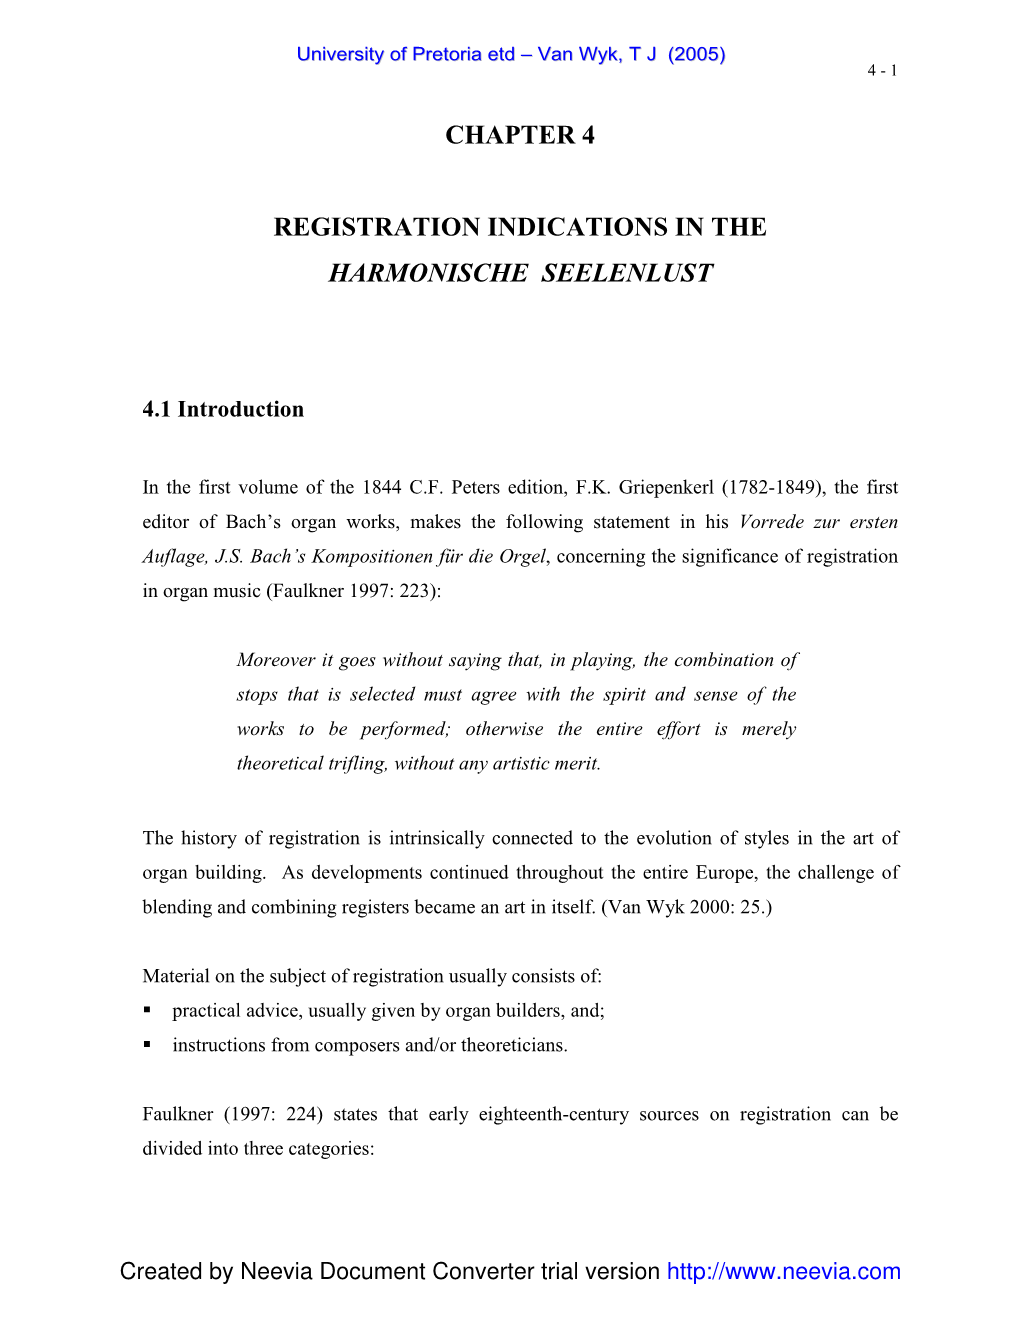 Chapter 4 Registration Indications in the Harmonische Seelenlust